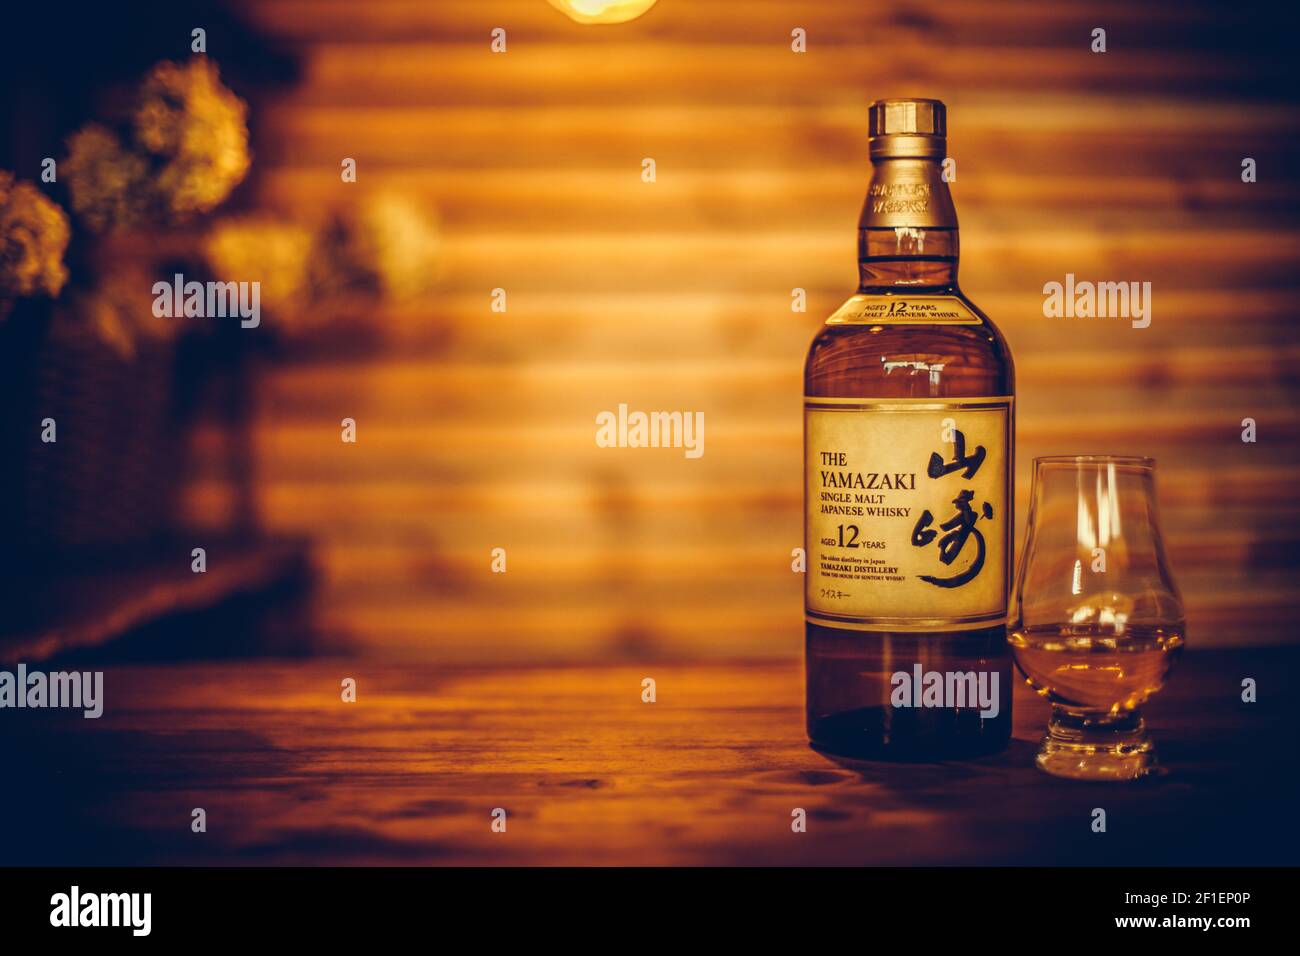 Bucarest, Romania - 25 febbraio 2021: Immagine editoriale illustrativa di una bottiglia di whisky giapponese al malto singolo Yamazaki e di un bicchiere di whisky Glencairn Foto Stock